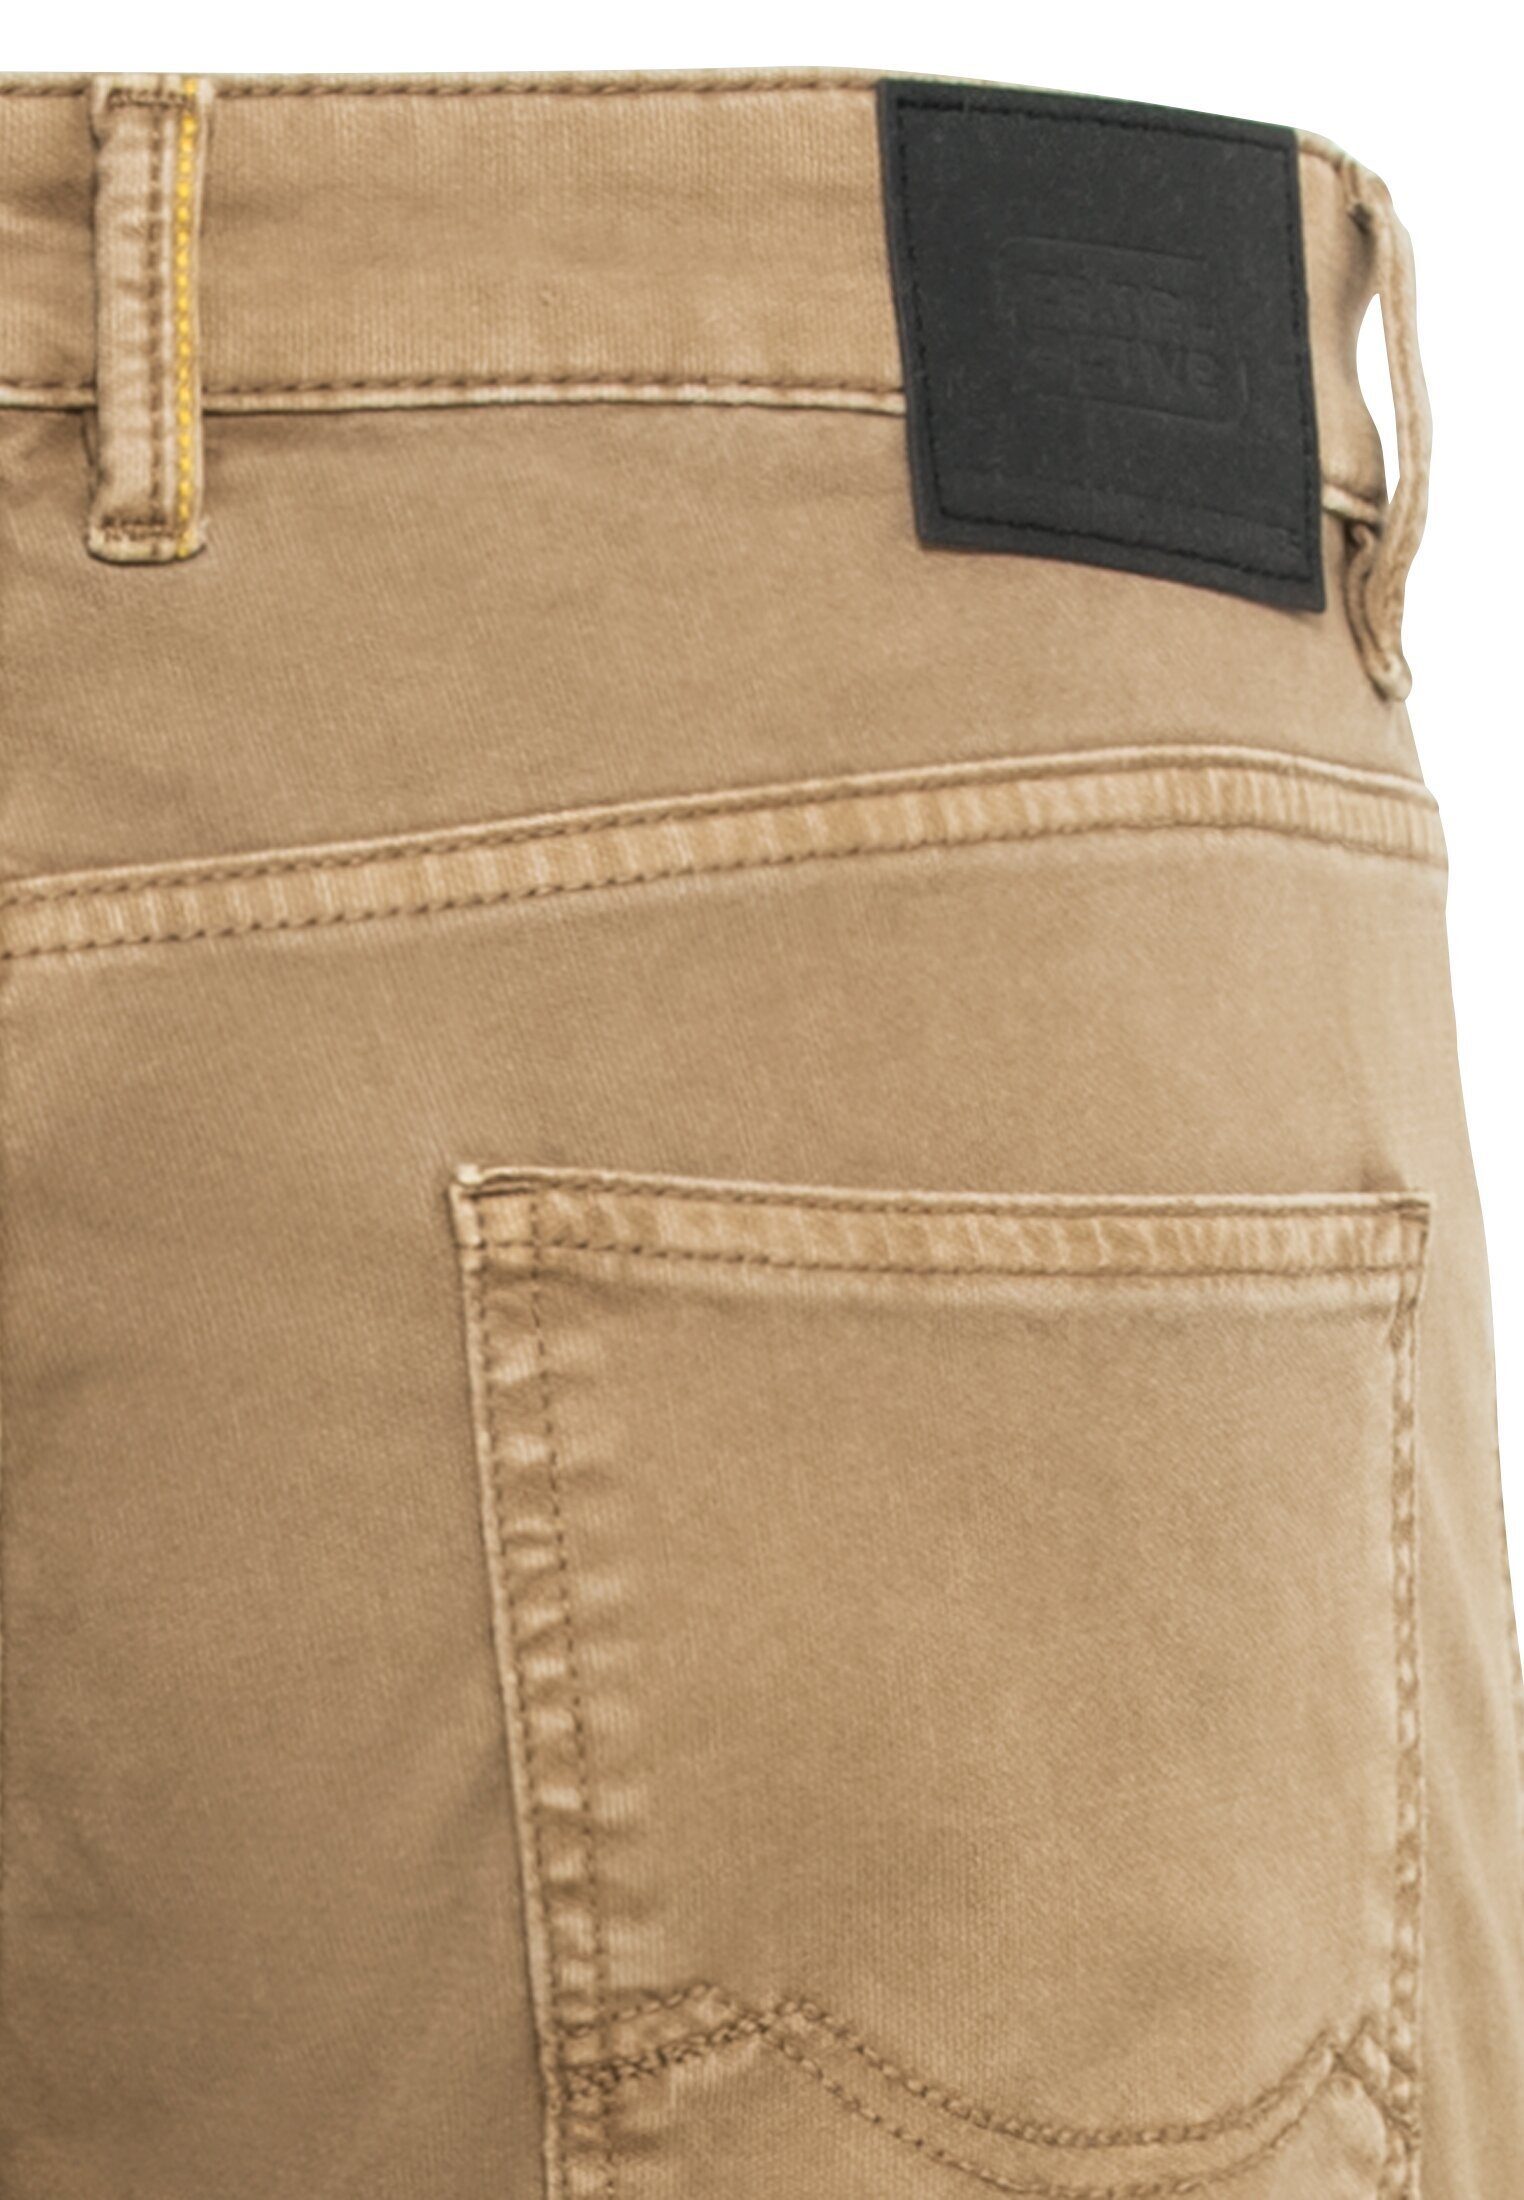 5-Pocket 5-Pocket-Jeans Fit Hose Regular Canvas camel Beige-Braun active